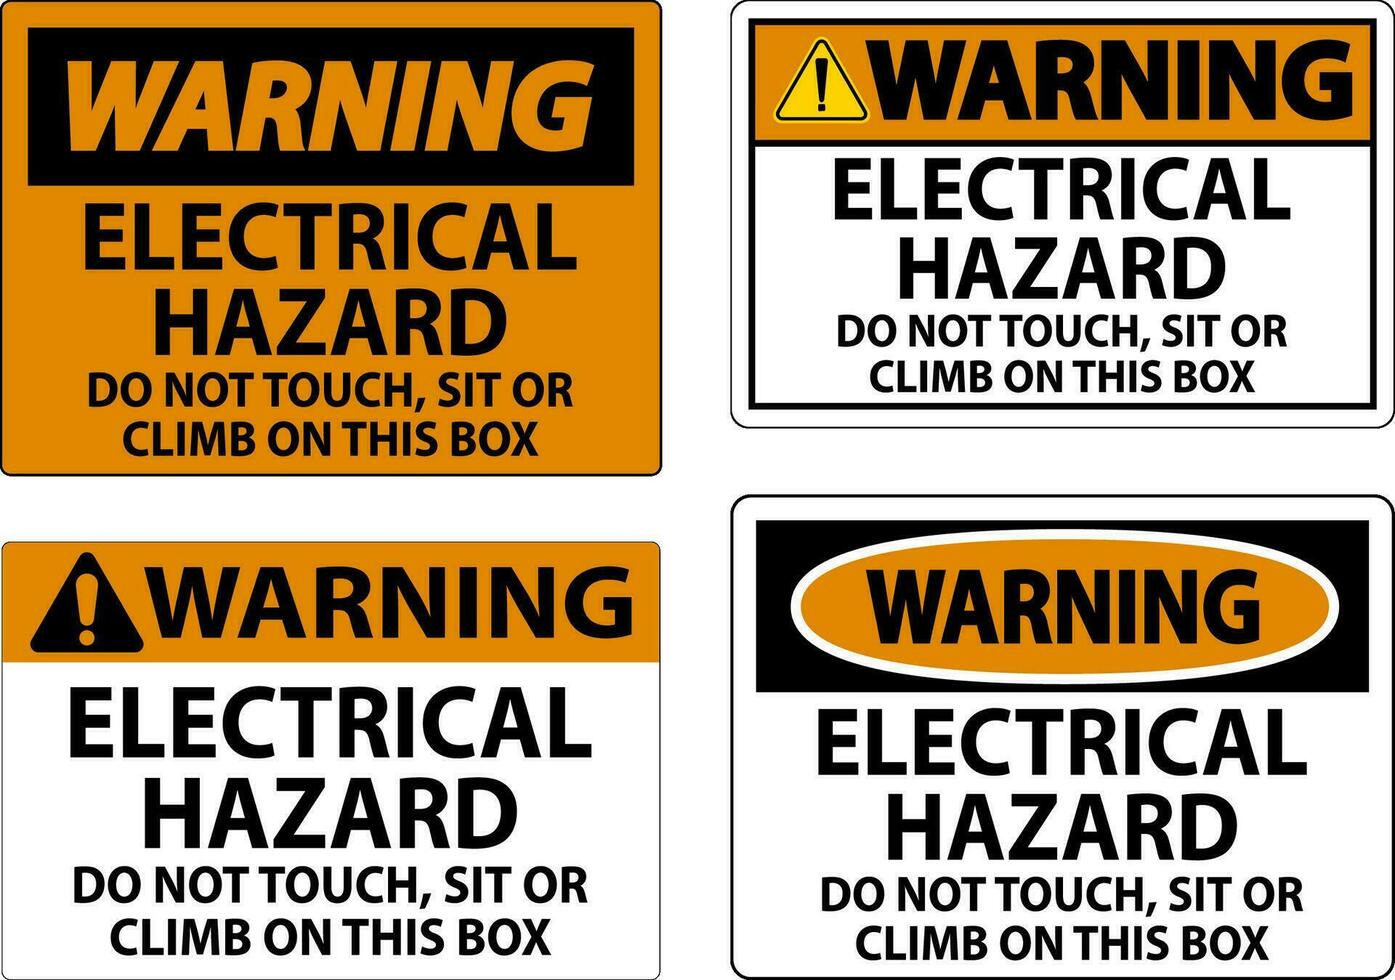 avertissement signe électrique danger - faire ne pas touche, asseoir ou montée sur cette boîte vecteur